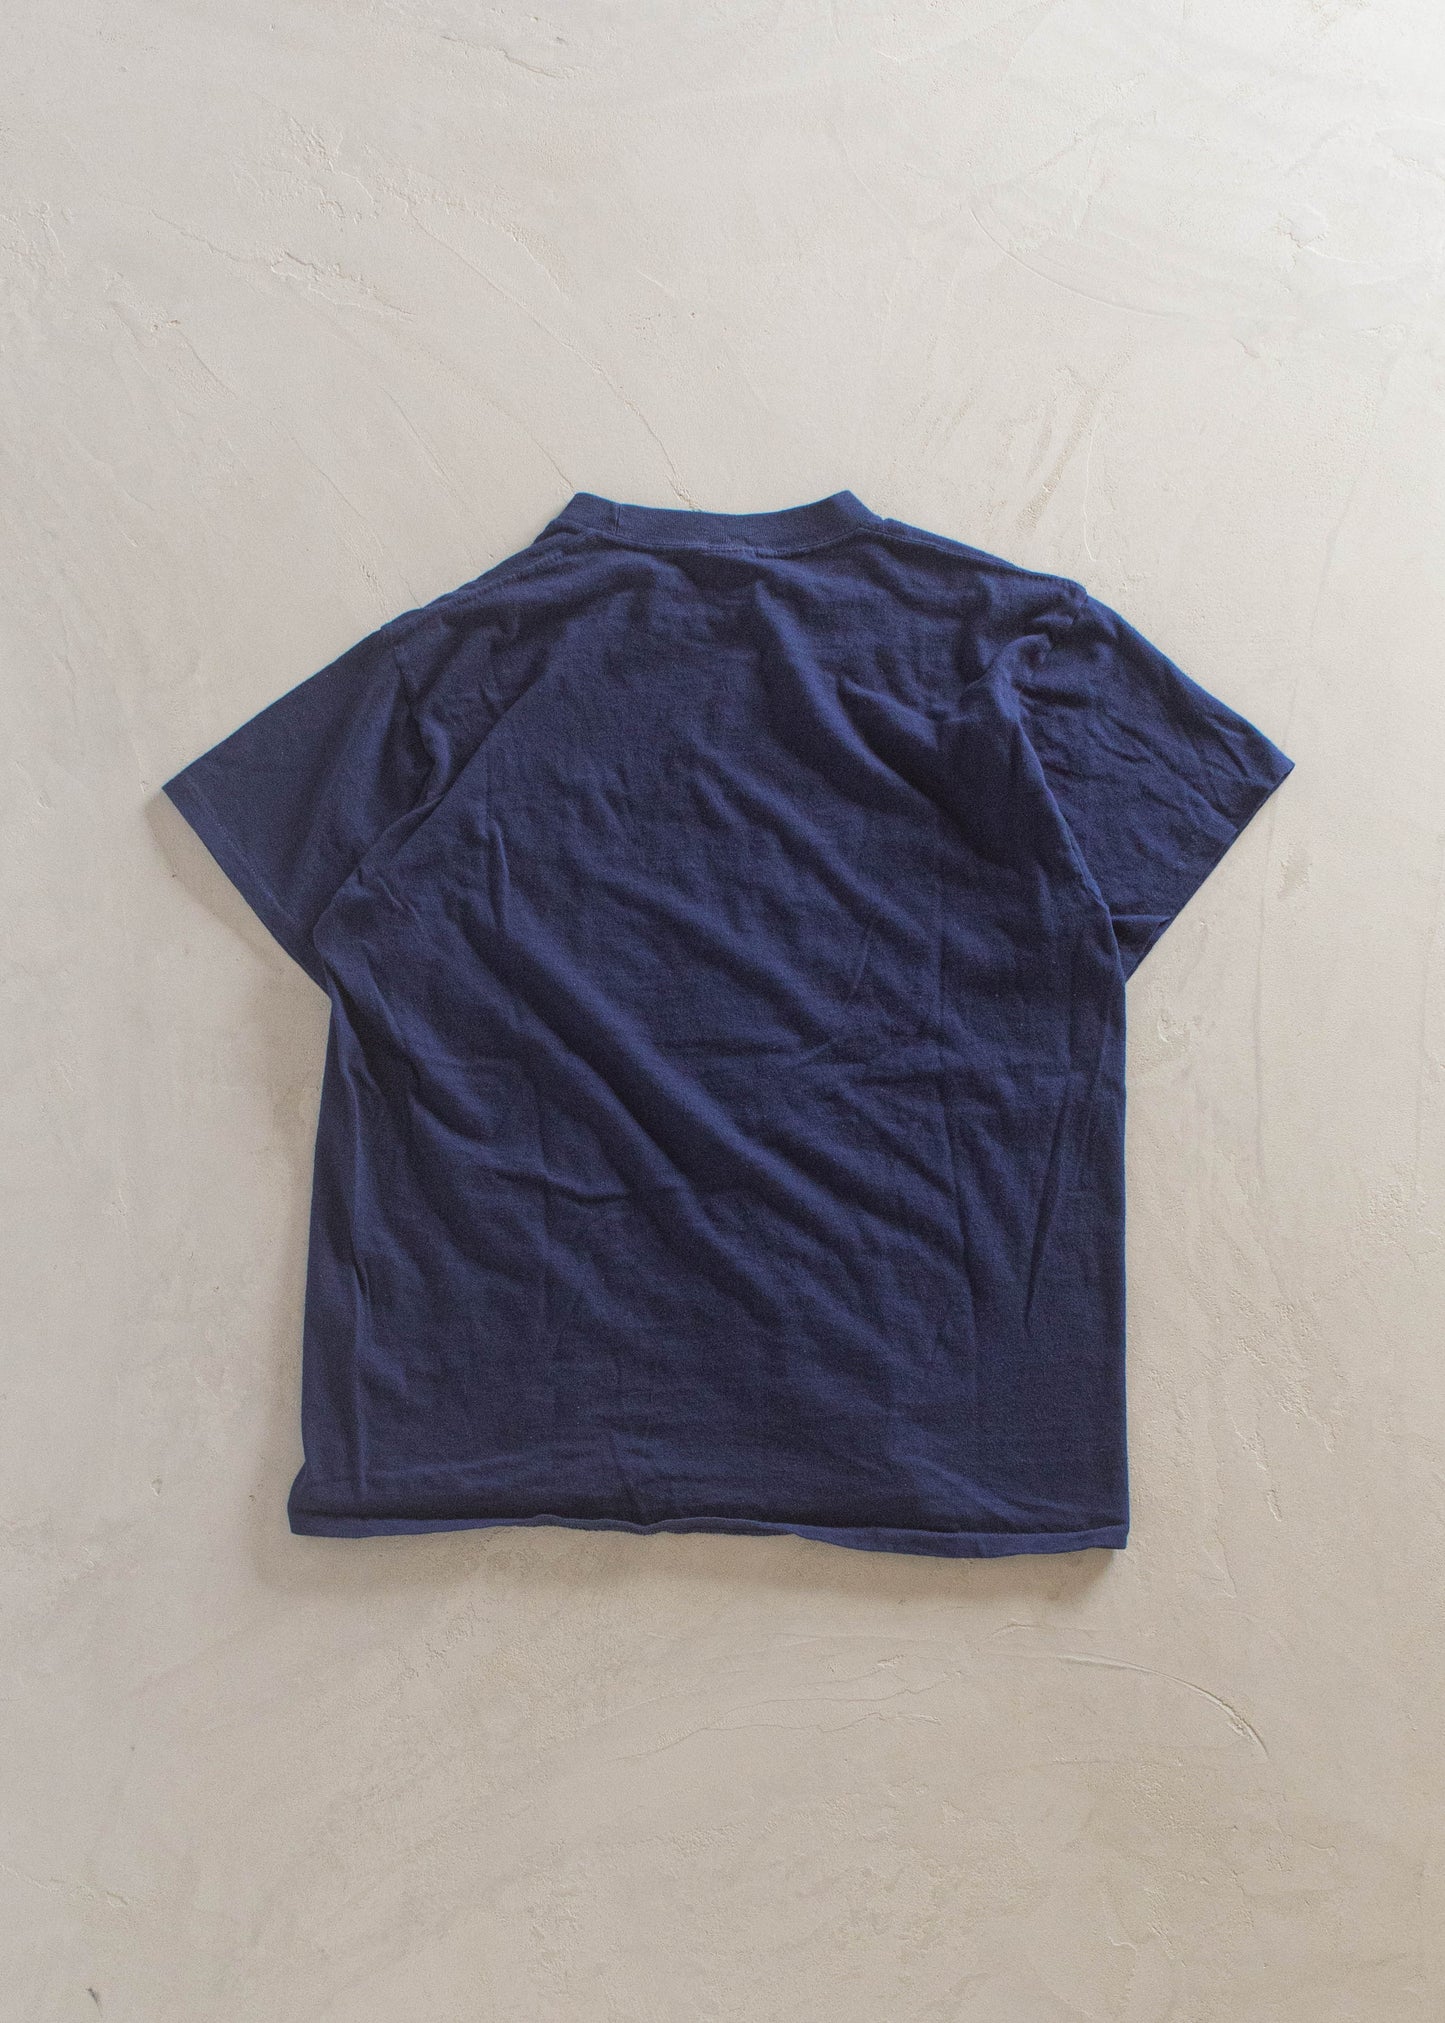 1980s Matt Andrews Selvedge Pocket T-Shirt Size S/M